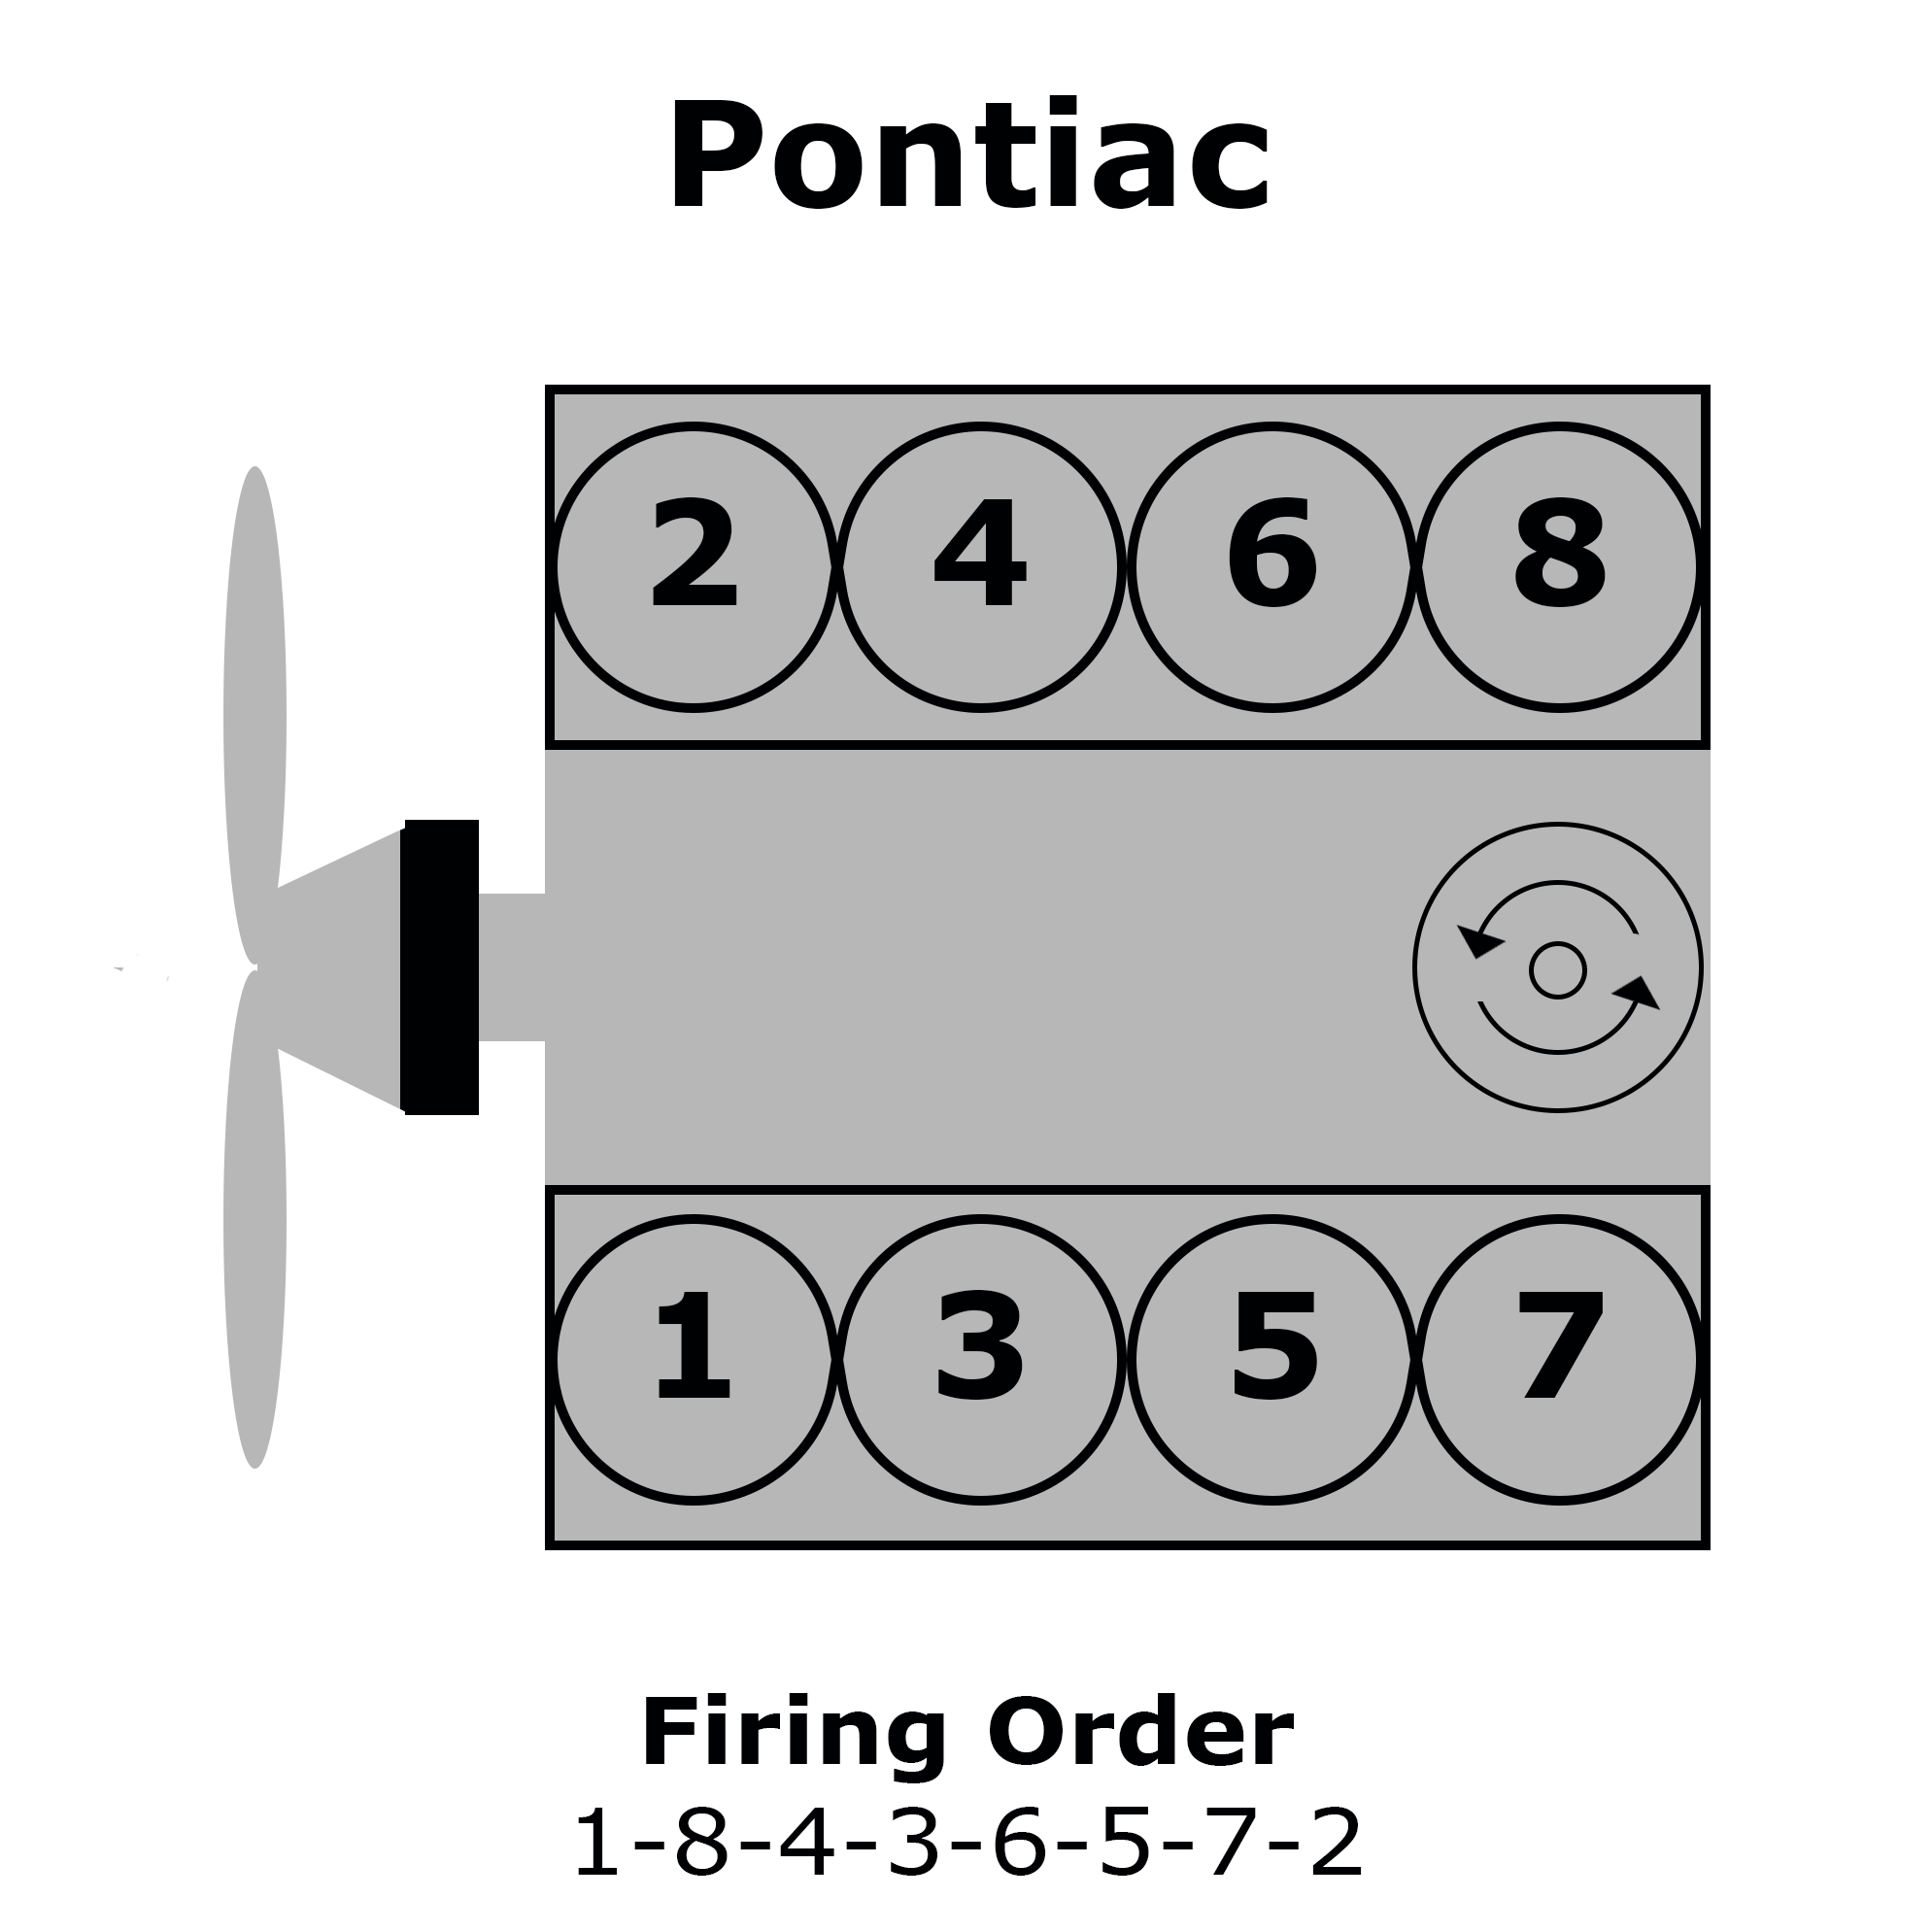 Pontiac V8 Cylinder Numbering, Distributor Rotation, and Firing Order